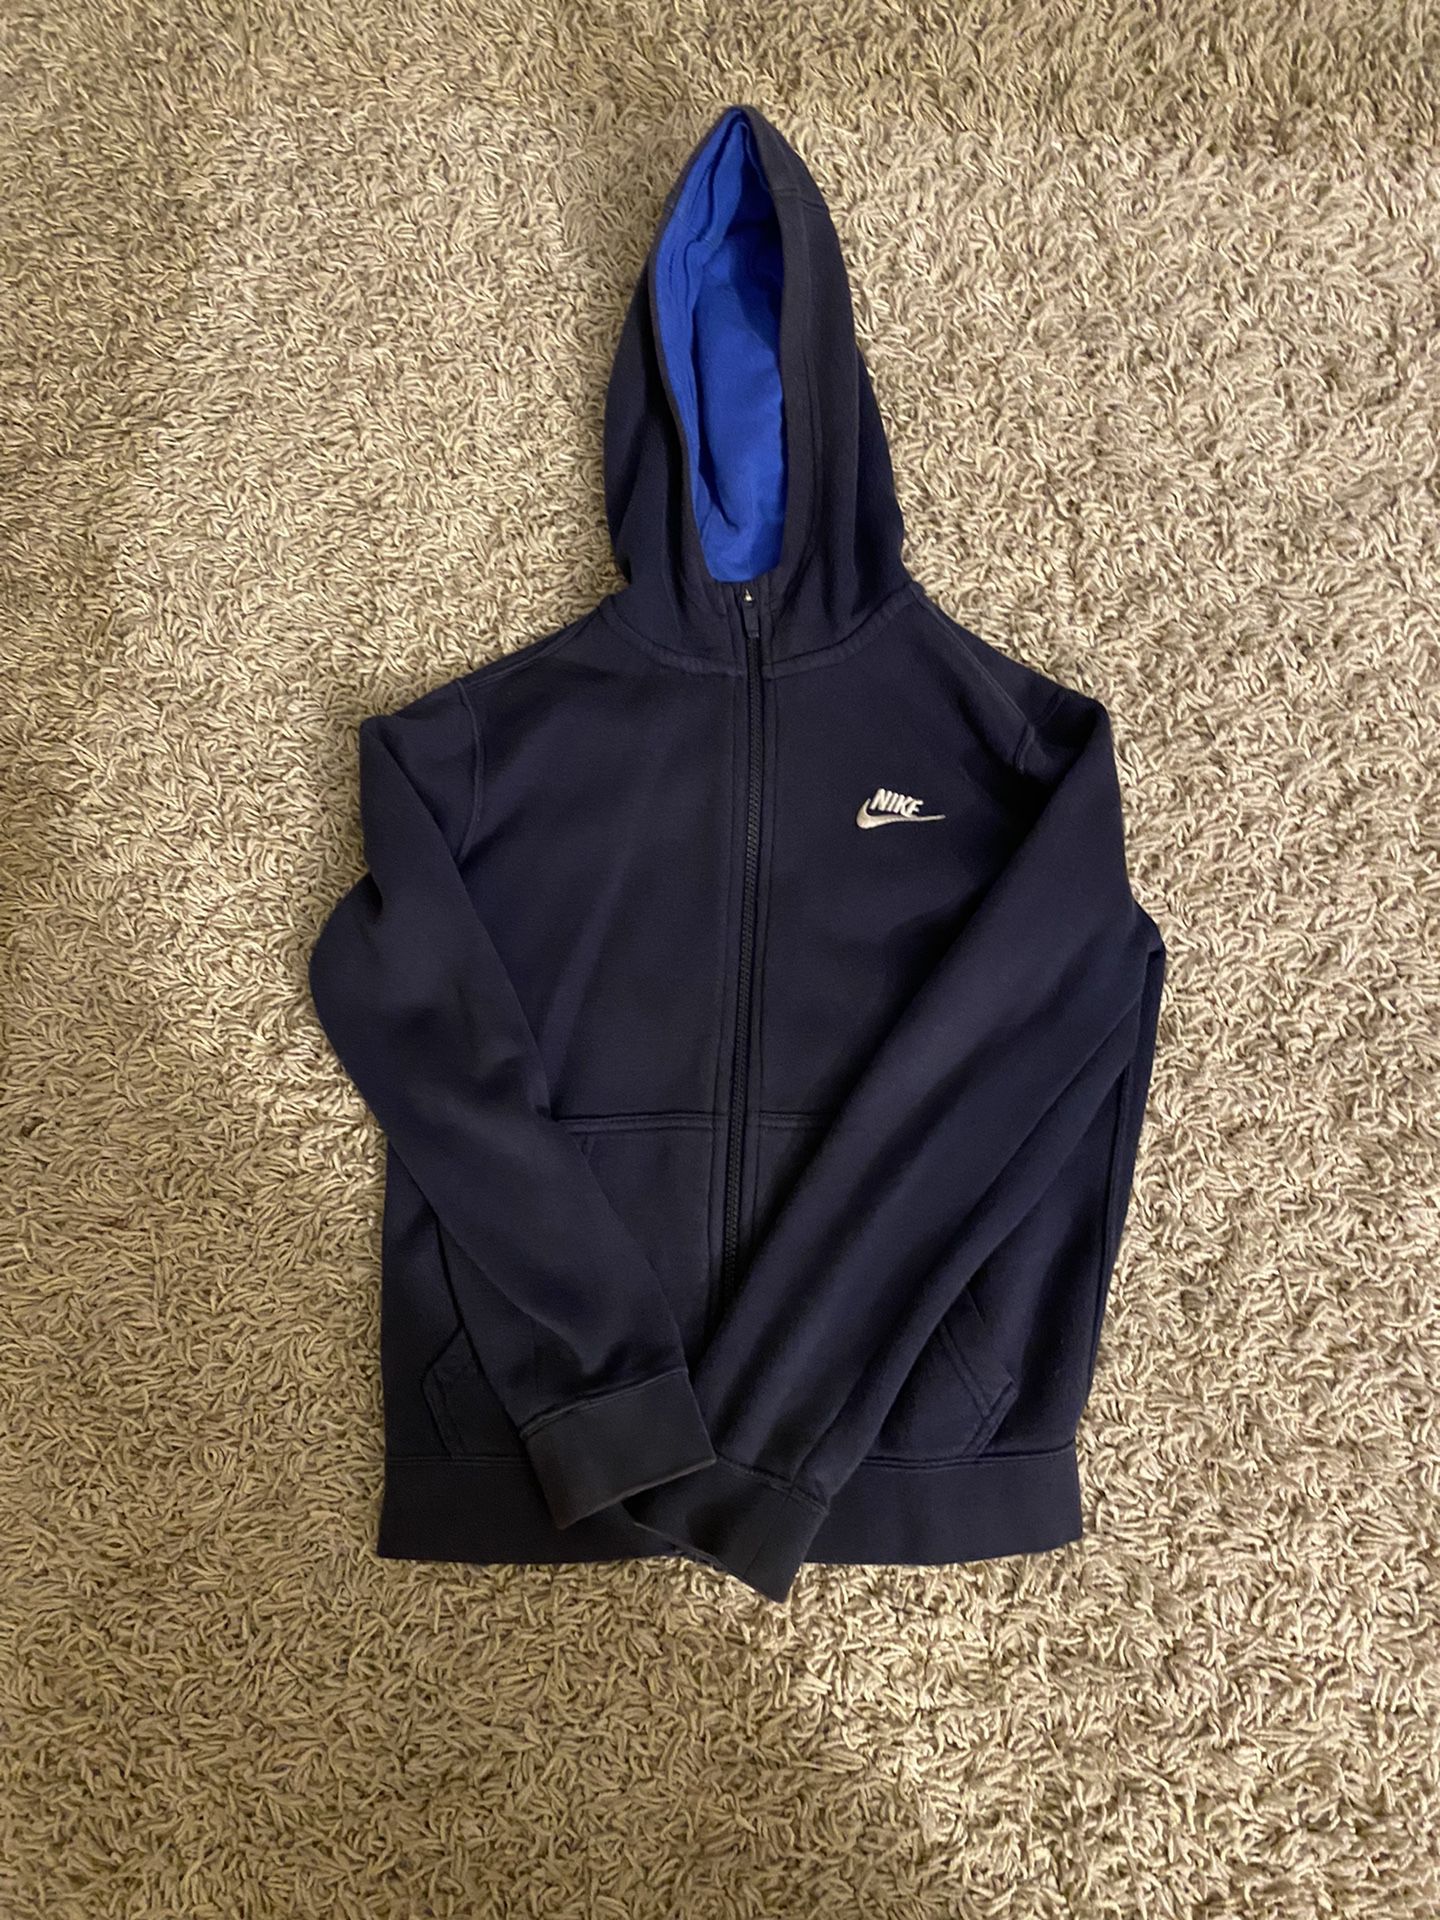 Blue Nike zip Up Jacket Size Boys M